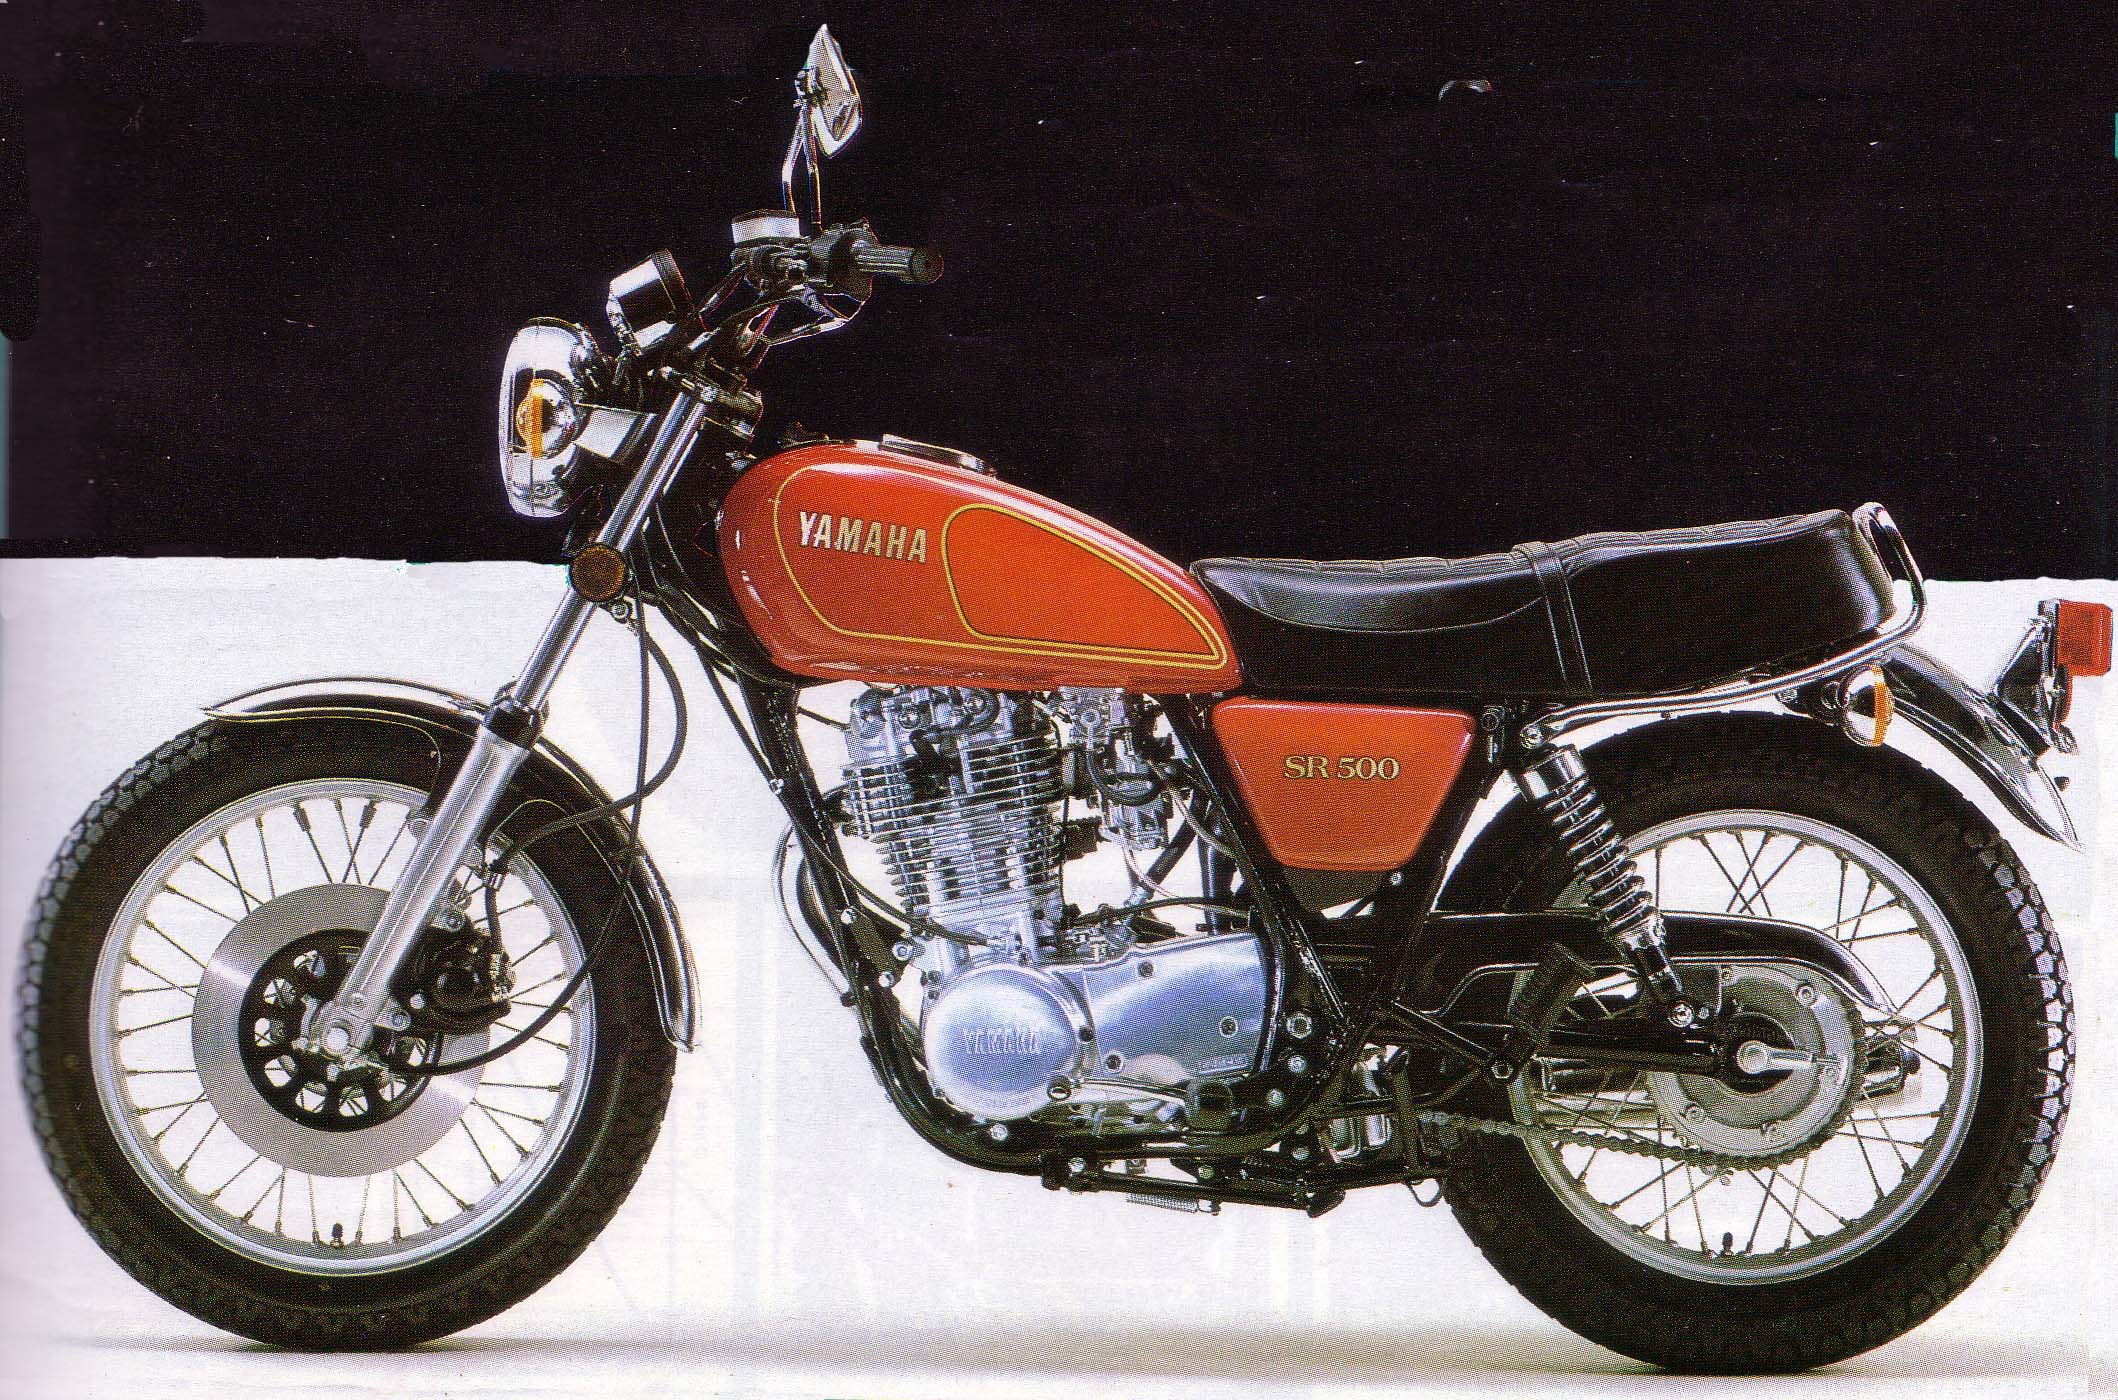 ヤマハ SR500 / YAMAHA SR500: 70年代のオートバイ